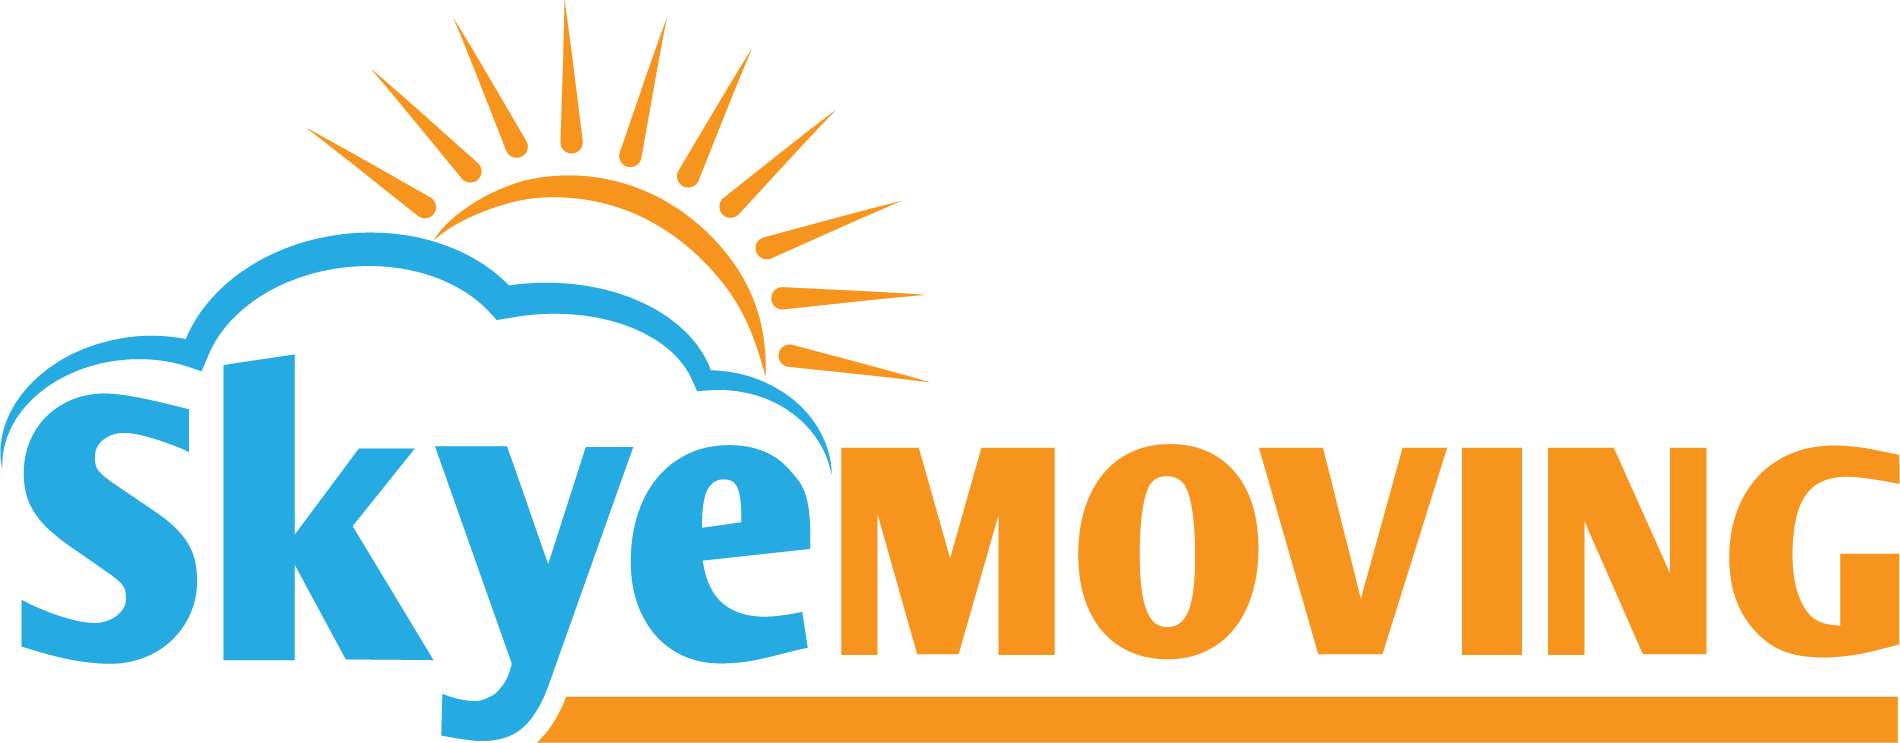 Skye-Moving-logo